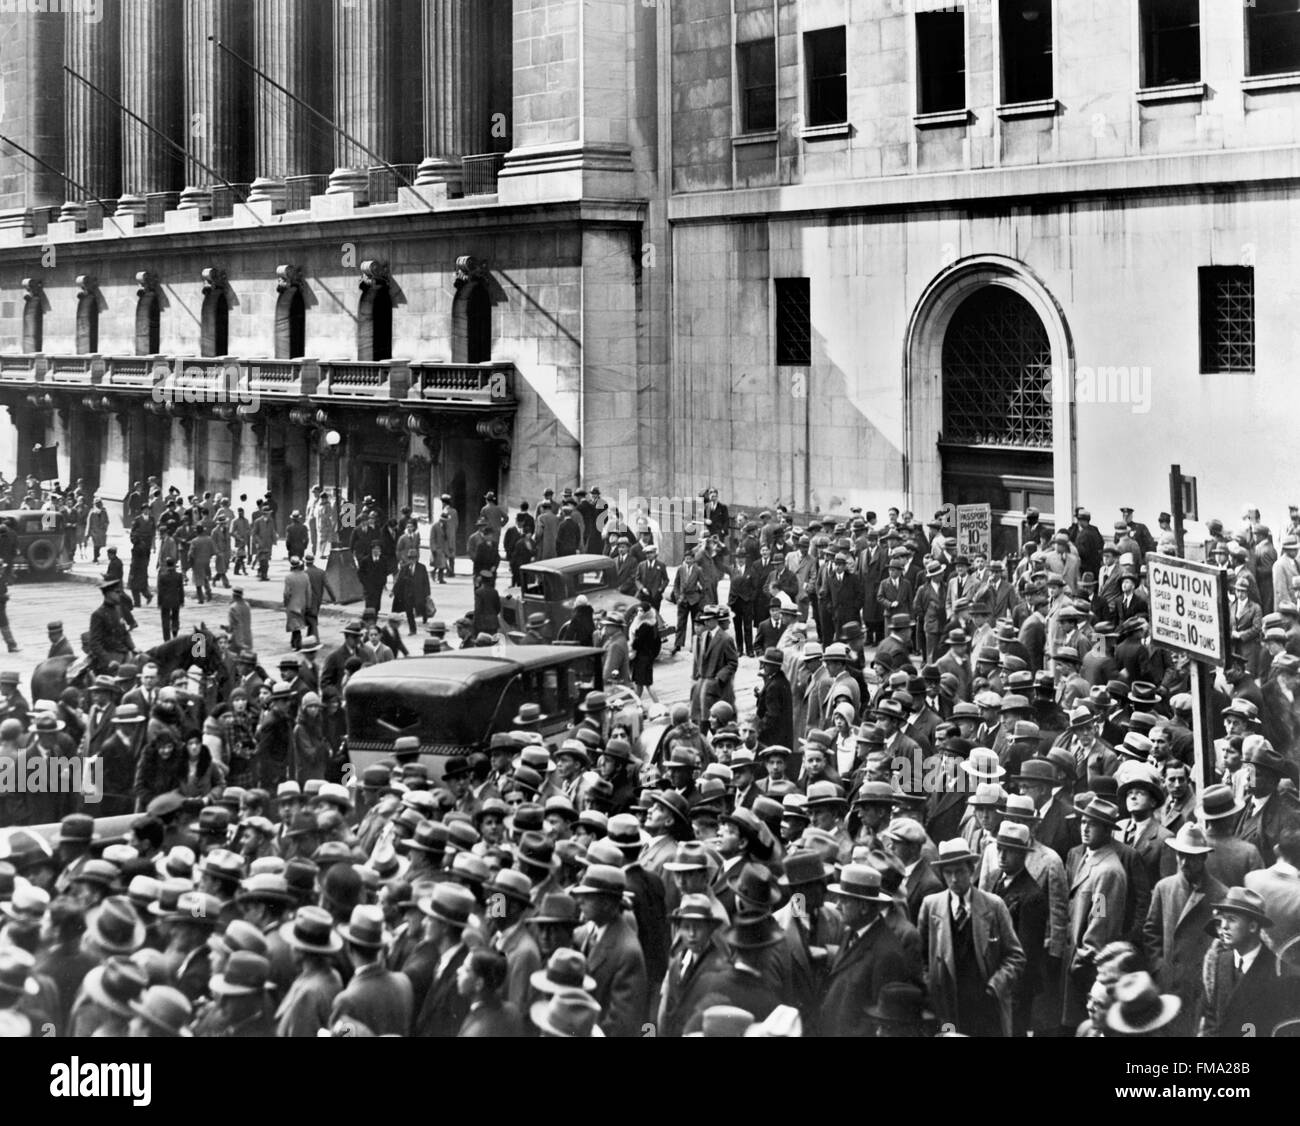 Krach de Wall Street. Foule de personnes se rassemblent à l'extérieur de la Bourse de New York après le krach de 1929, qui a conduit à la grande dépression. Banque D'Images